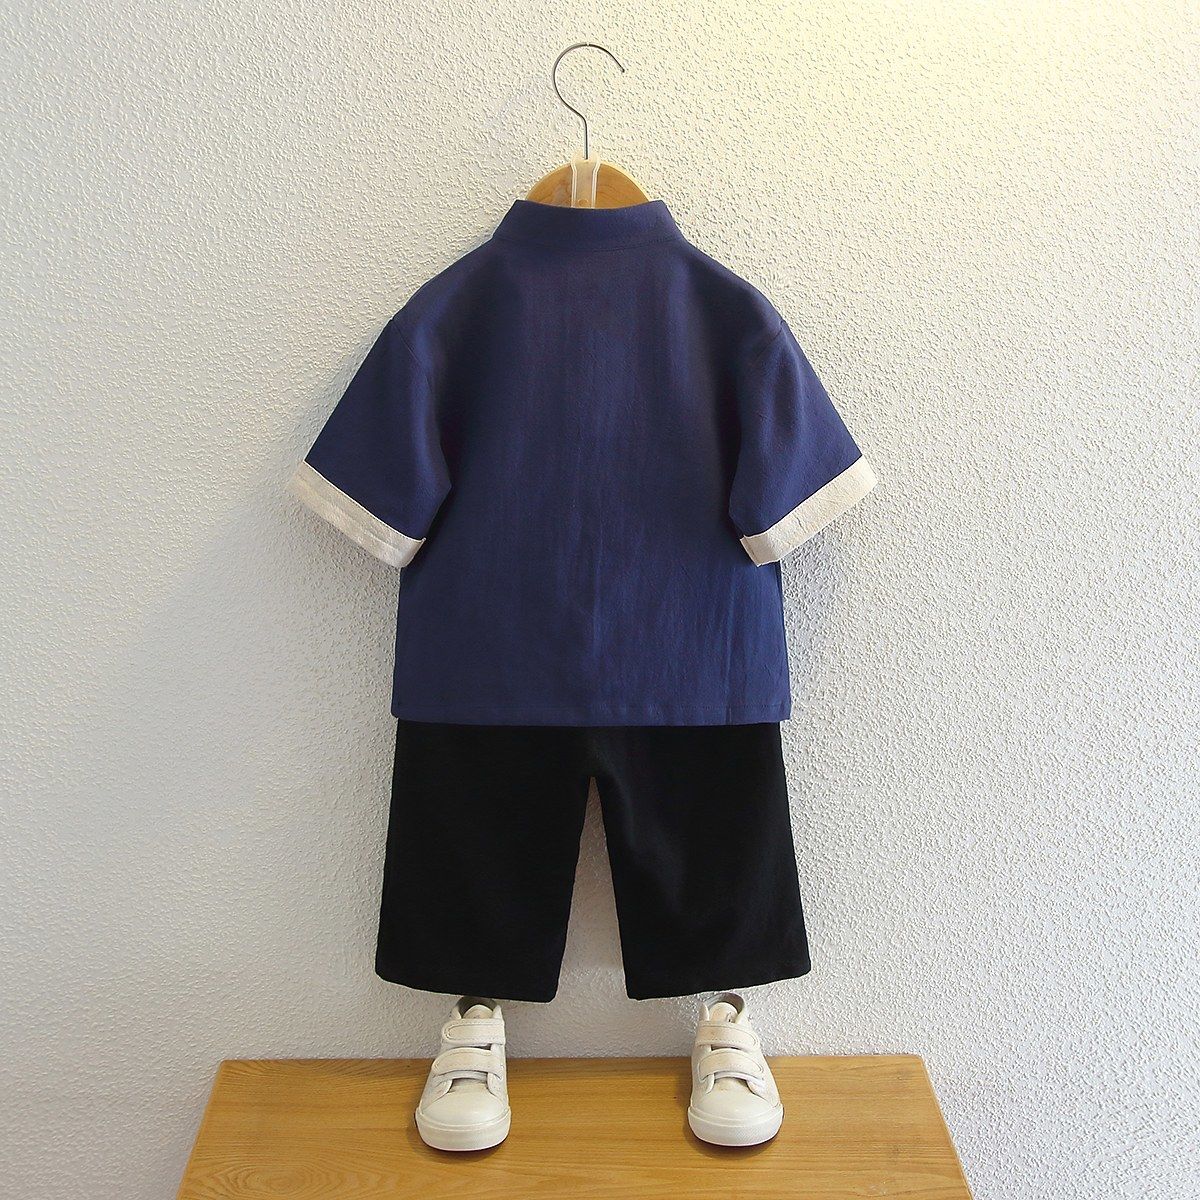 男童汉服夏中国风短袖薄款小童宝宝演出服中式改良儿童唐装两件套